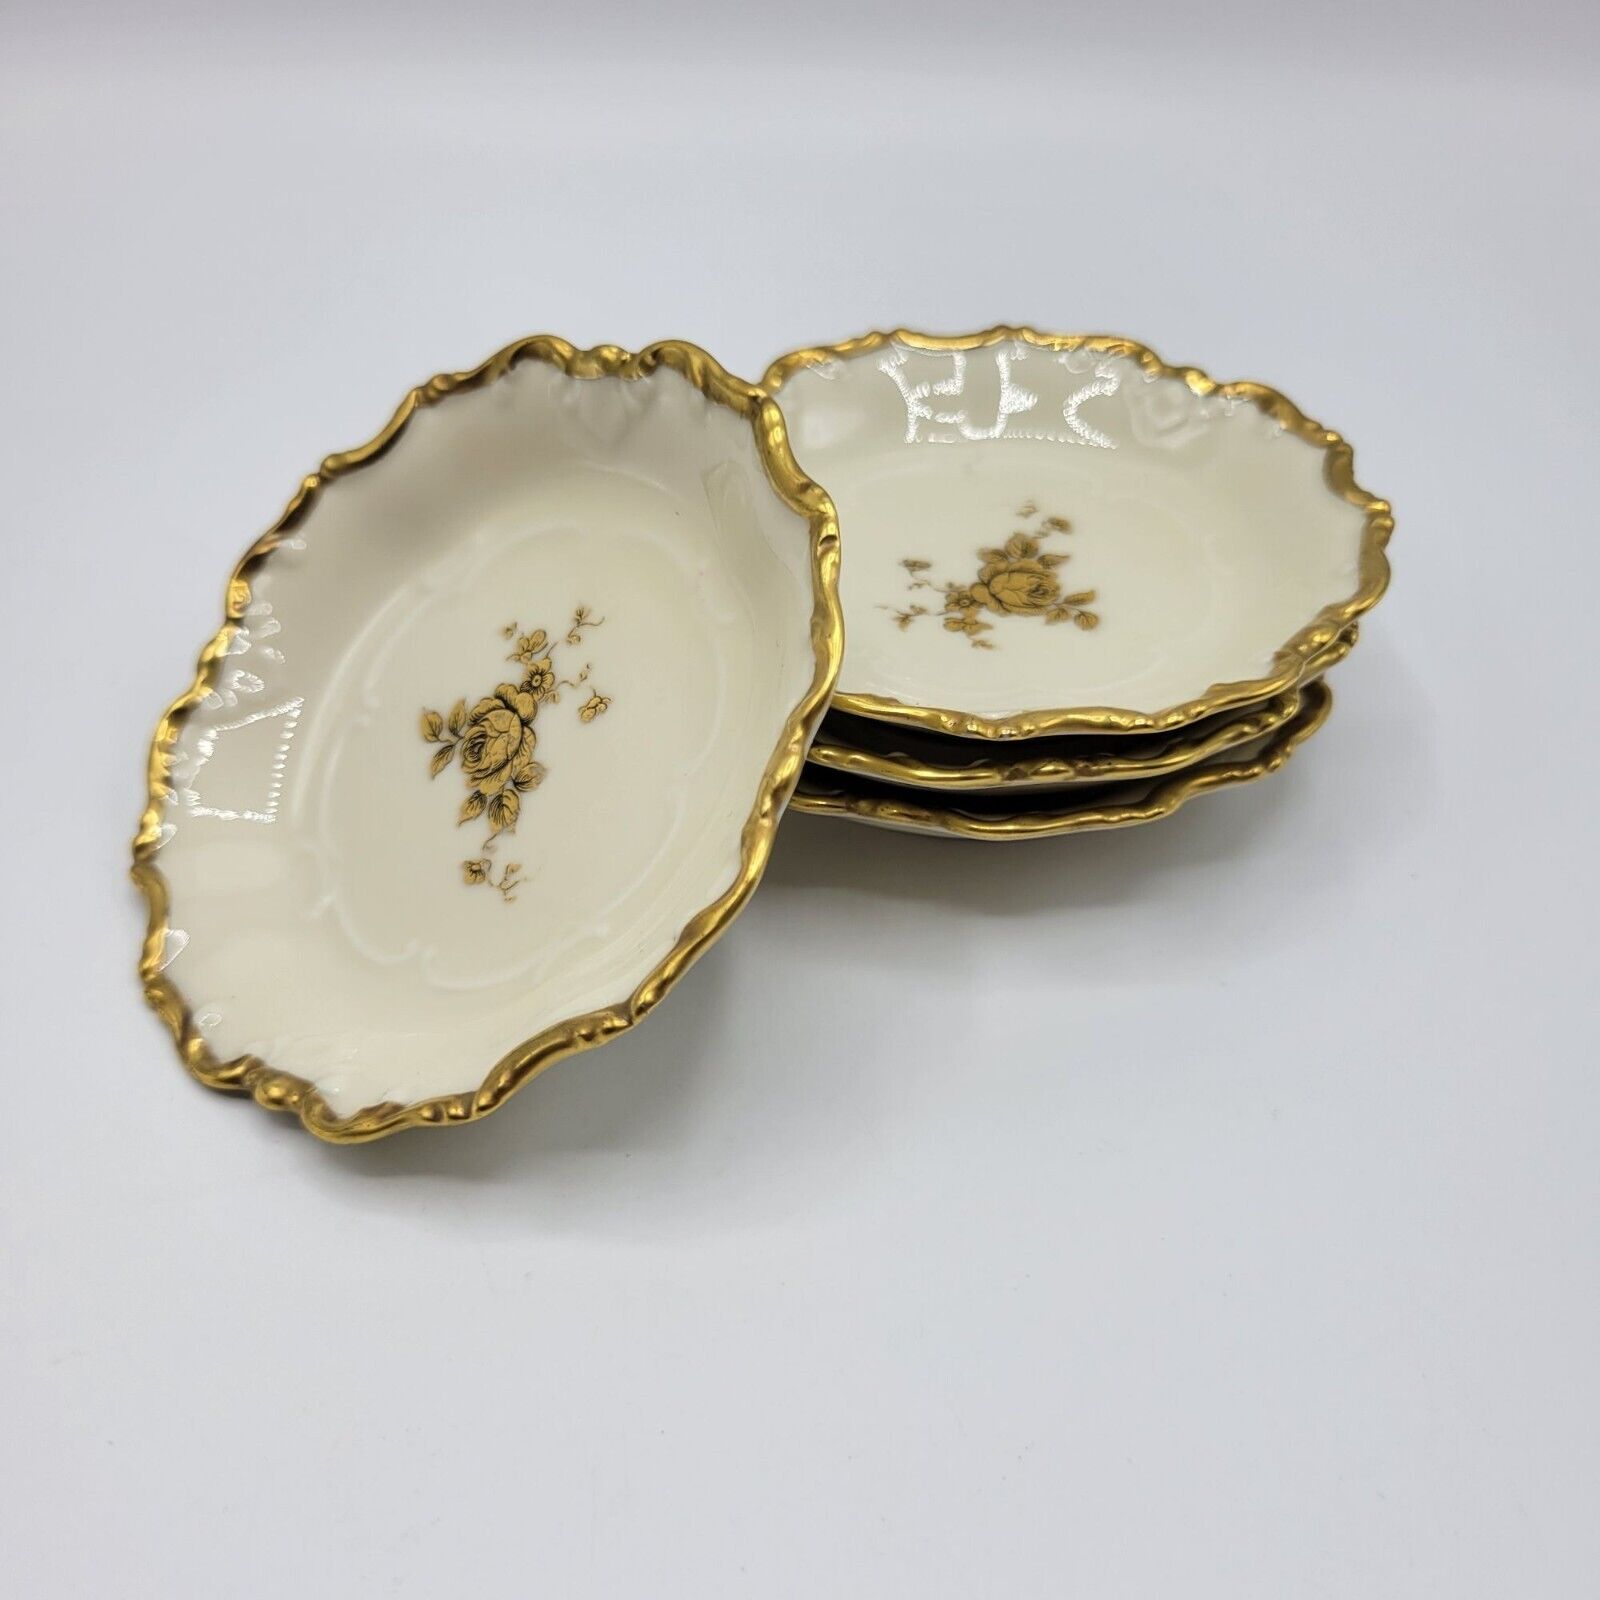 Vtg Eamag Schonwald Bavaria Porcelain Trinket Dishes Gold Trim Floral Set of 4